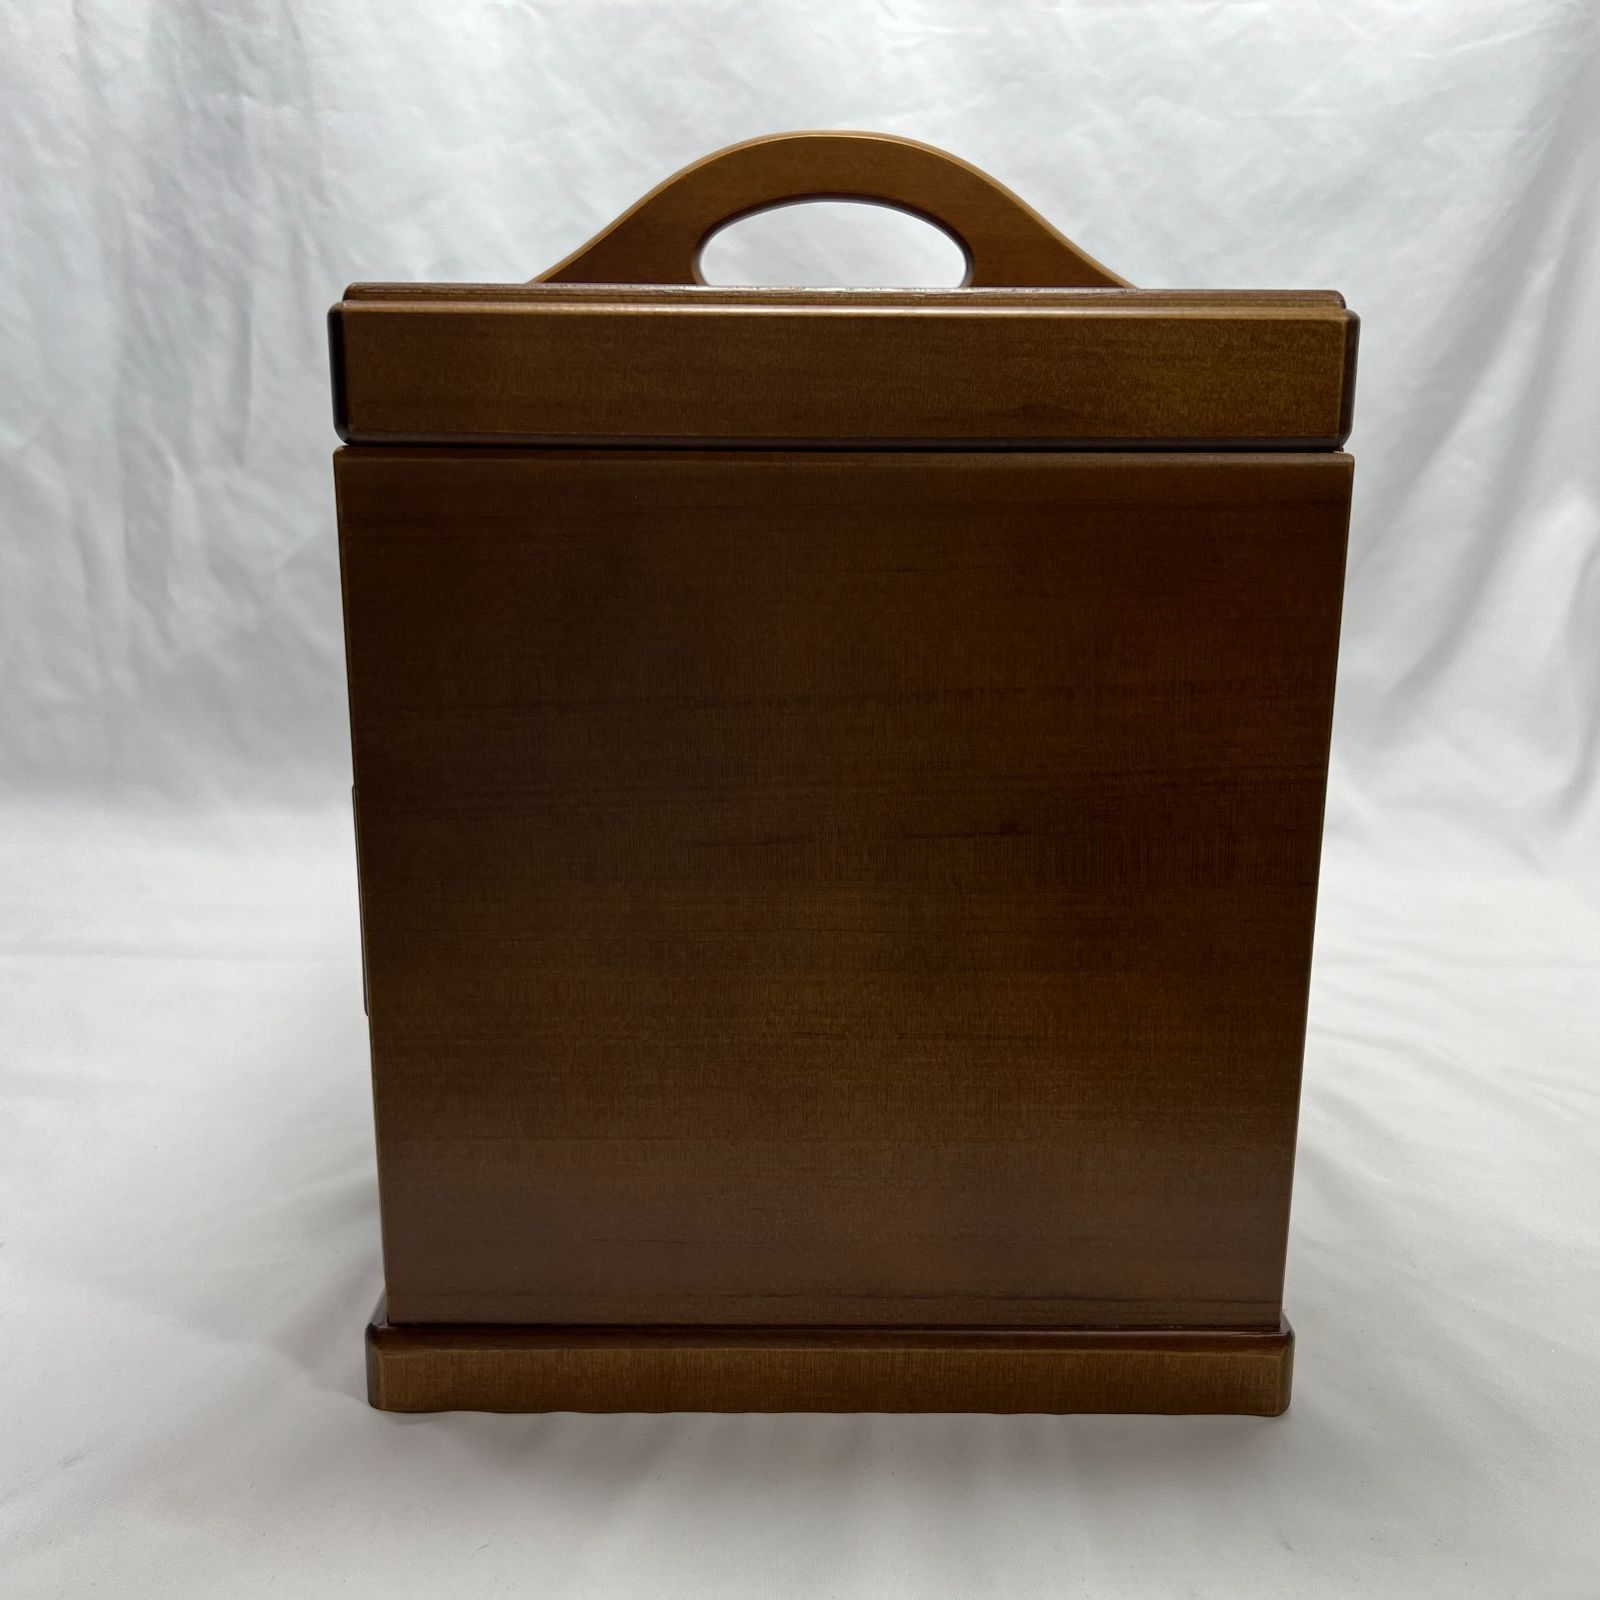 【特価】ソーイングボックス 裁縫箱 大容量 持ち運び ハンドル 取っ手 引き出し 木製 ブラウン 茶色 ダークブラウン こげ茶 BM061002